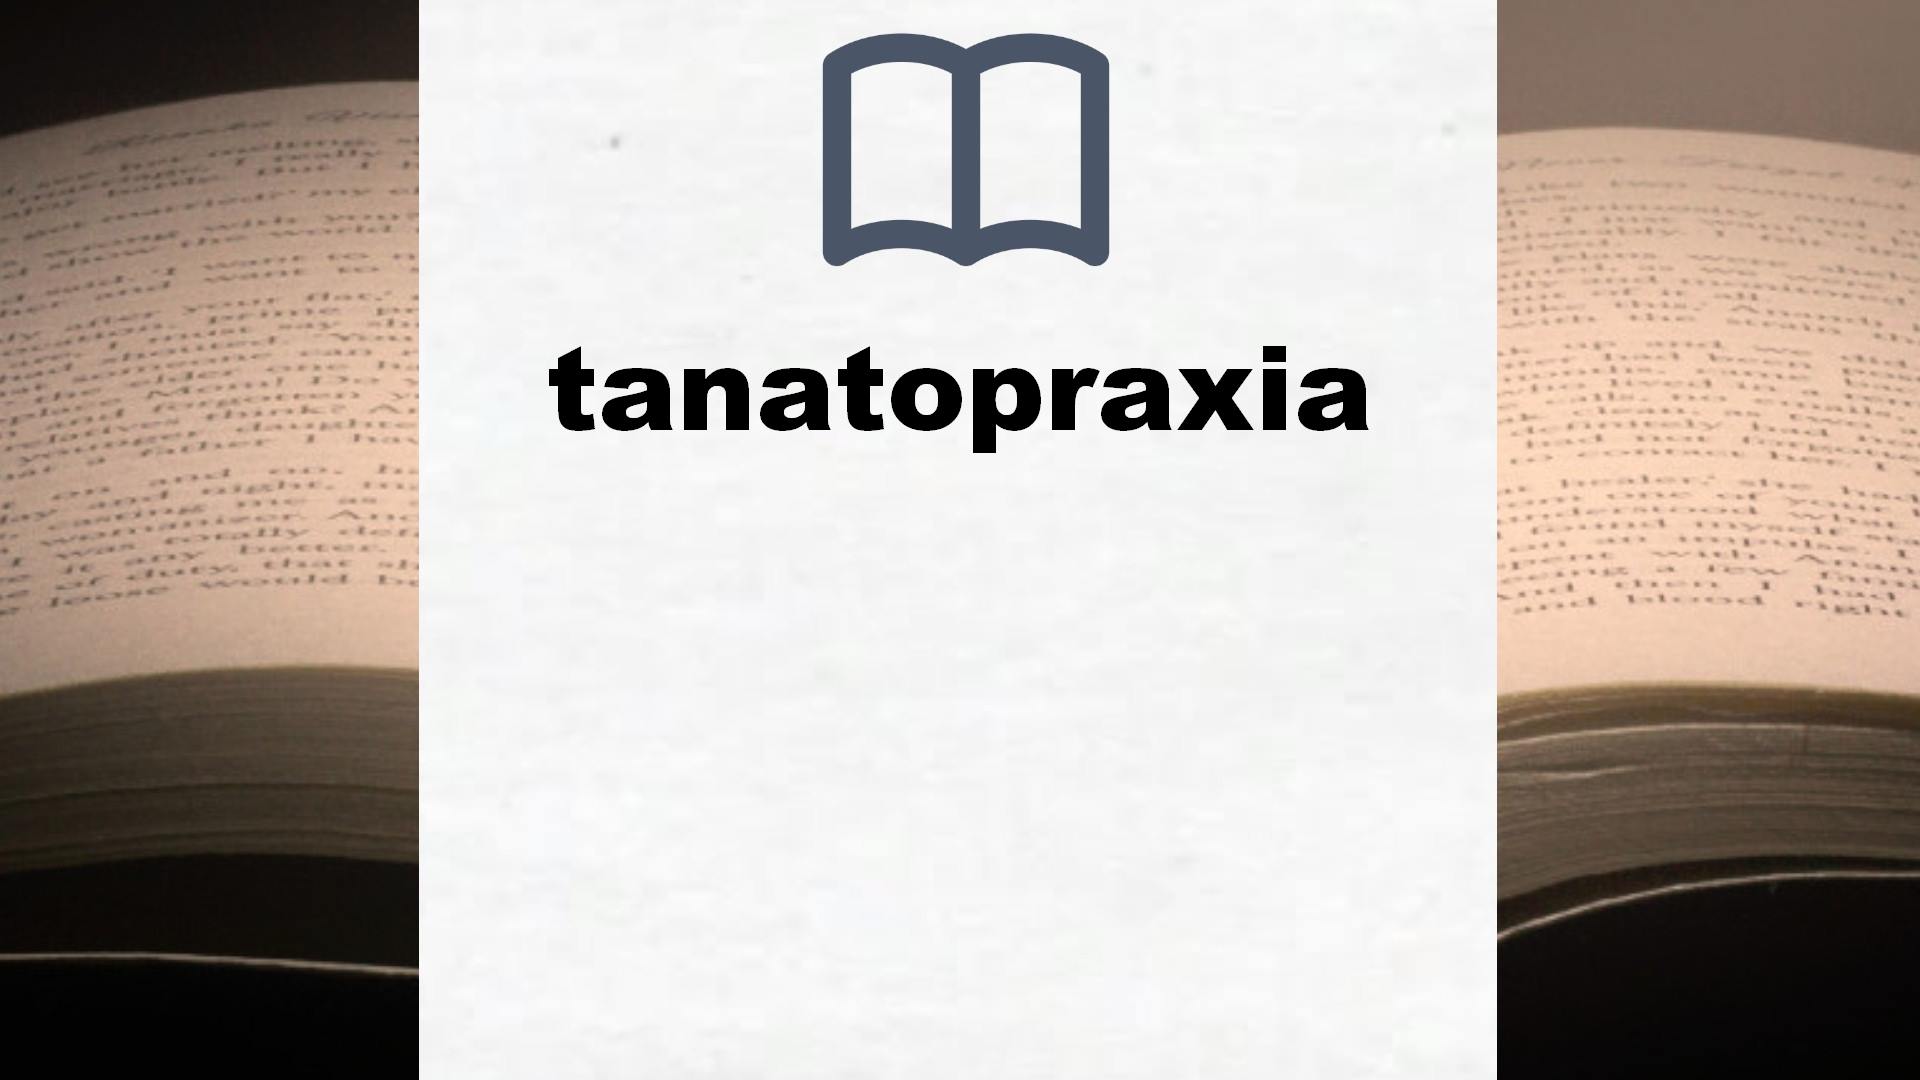 Libros sobre tanatopraxia